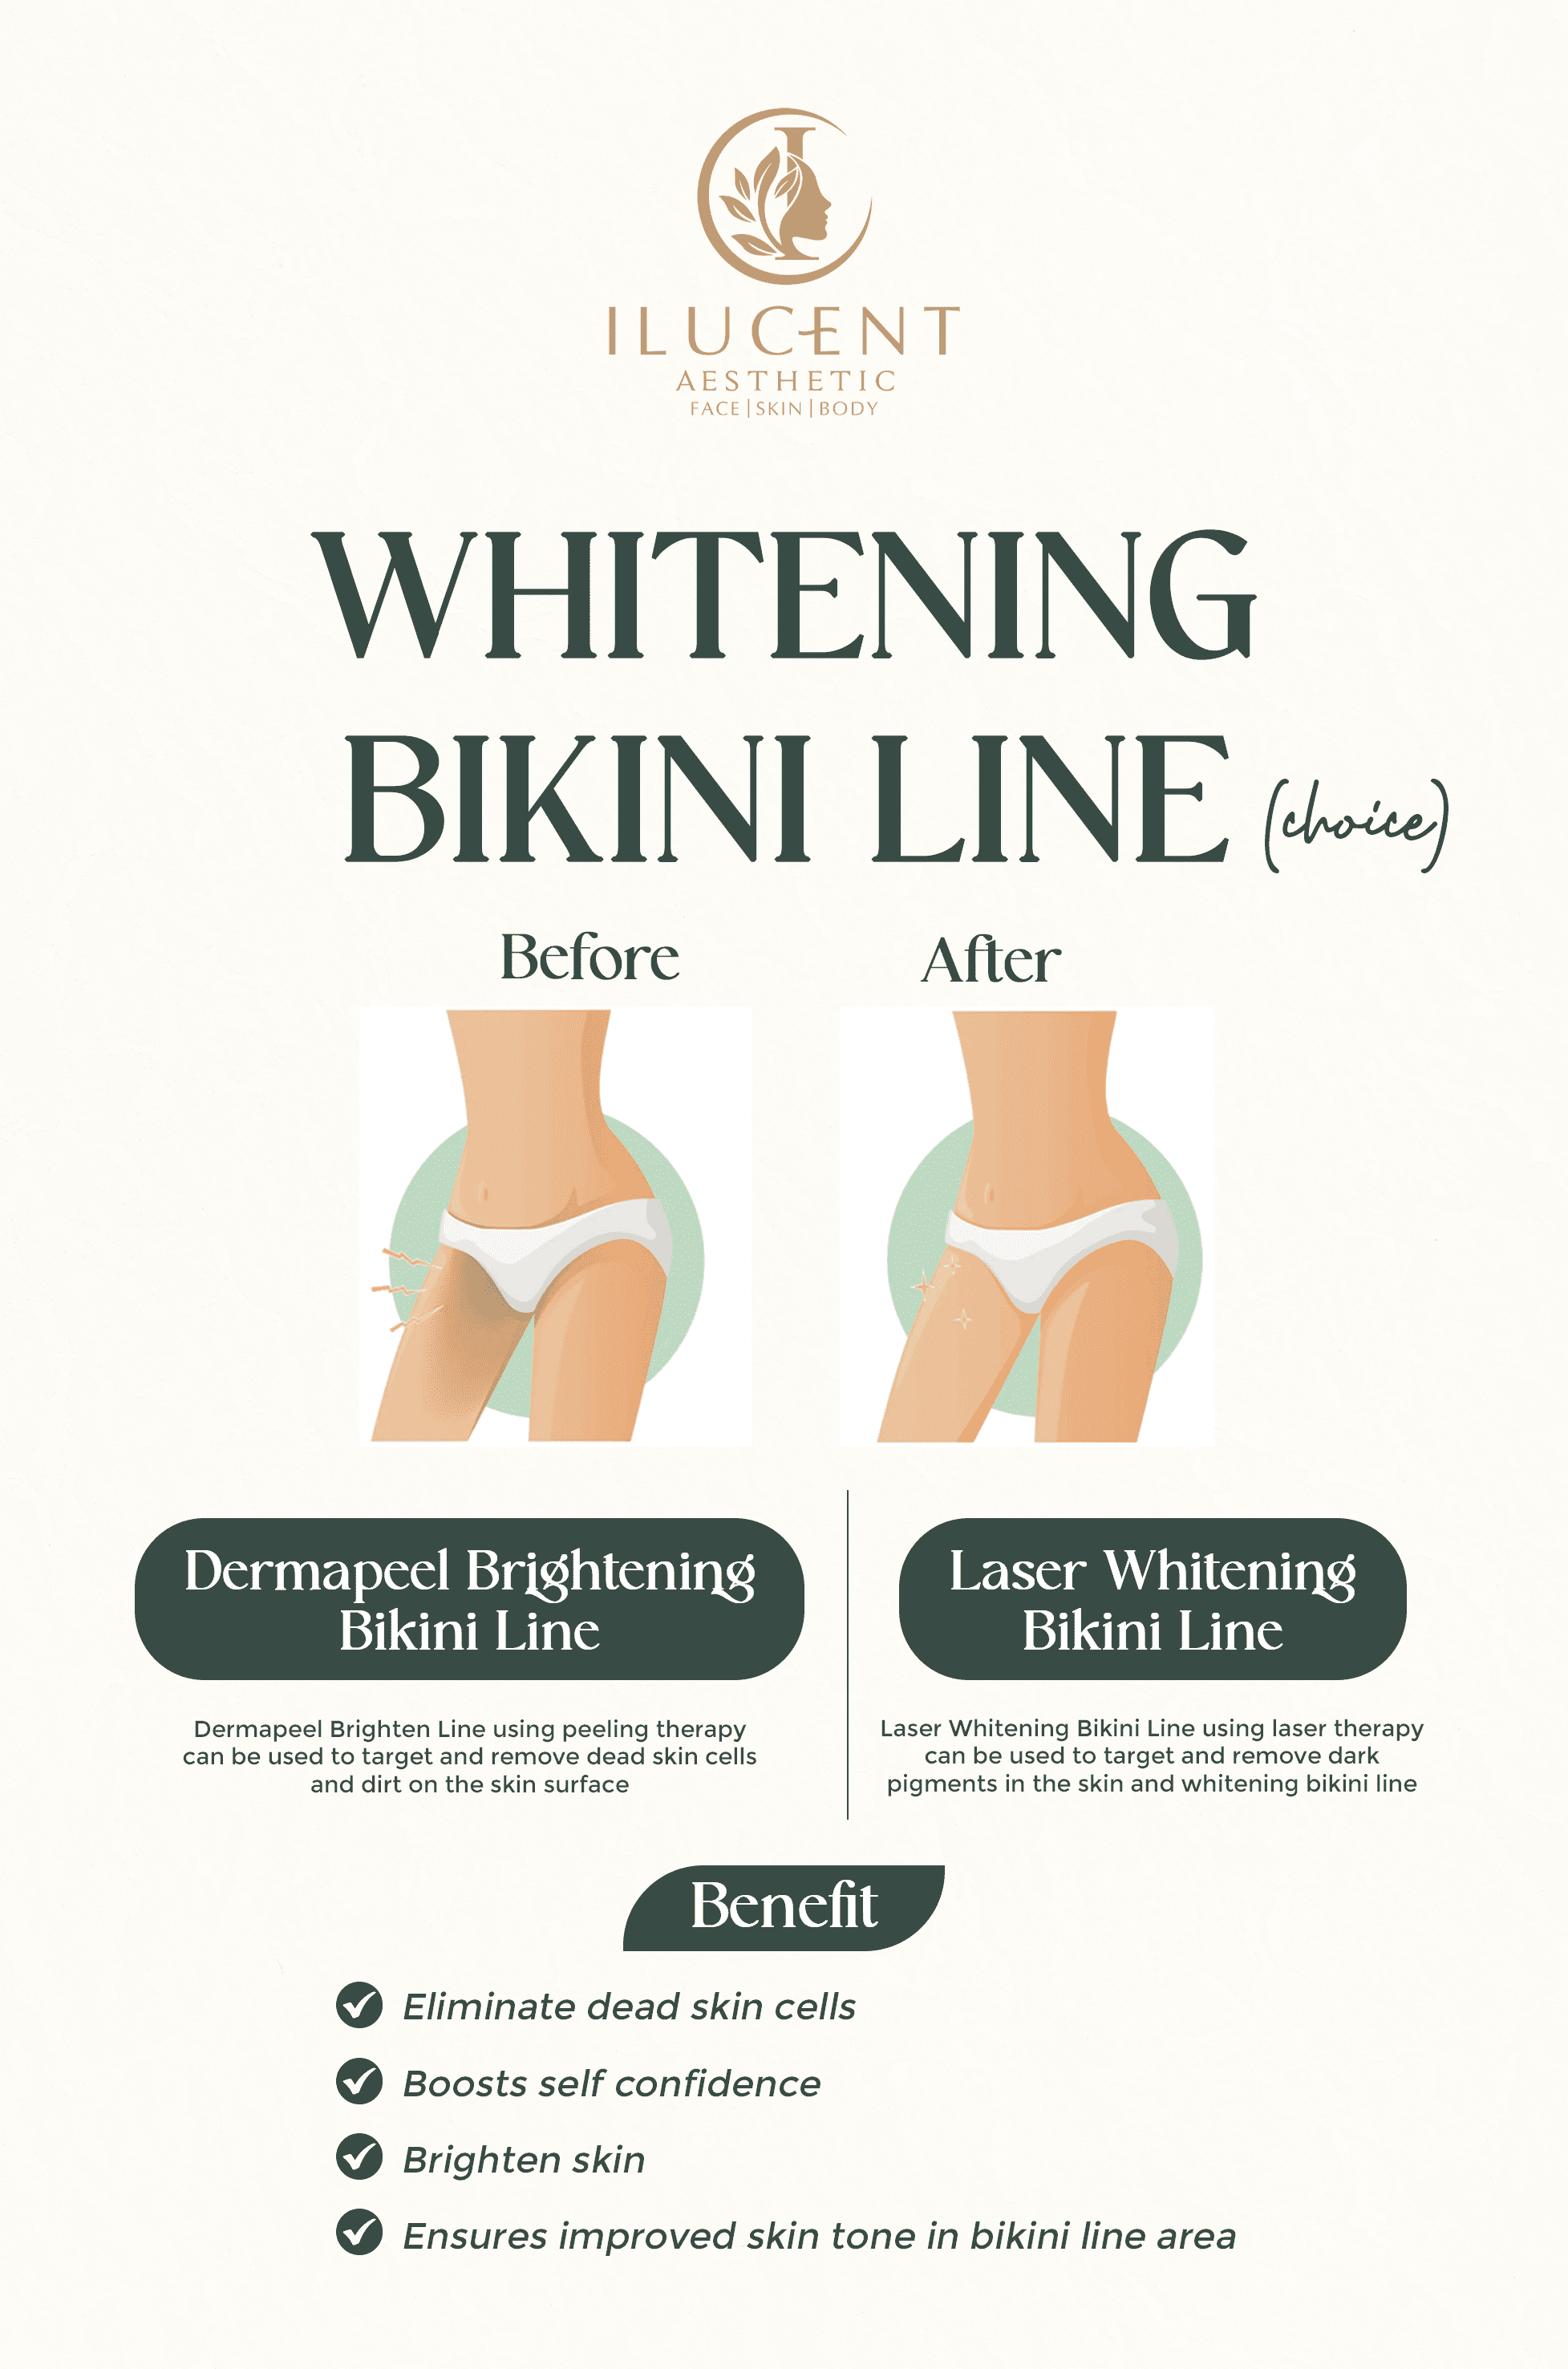 Whitening Bikini Line (Choice)